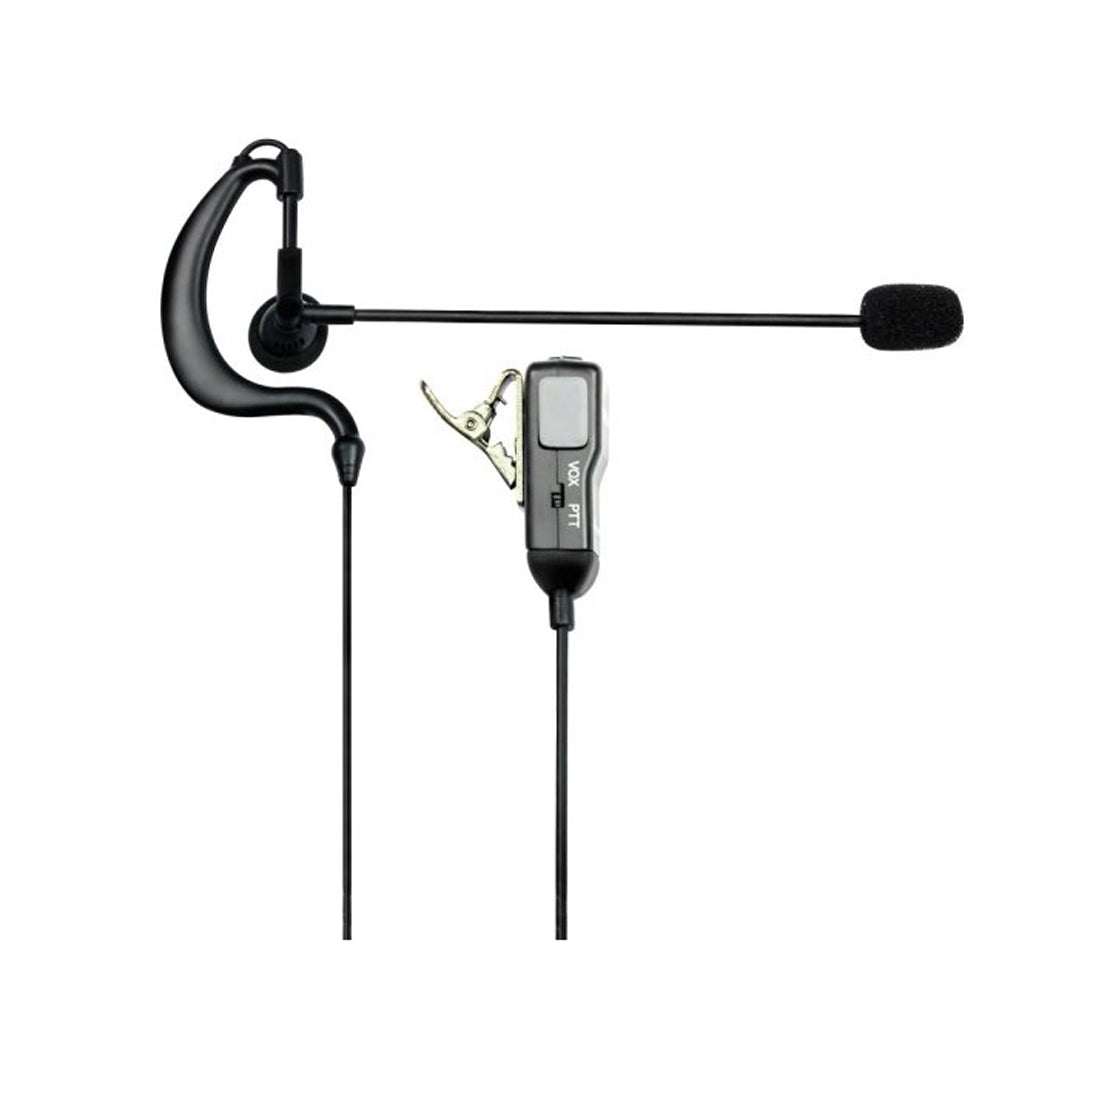 Midland Microfono auricolare MA30-L a 2 Pin C648.03, ricetrasmittente con cuffia ad aggancio